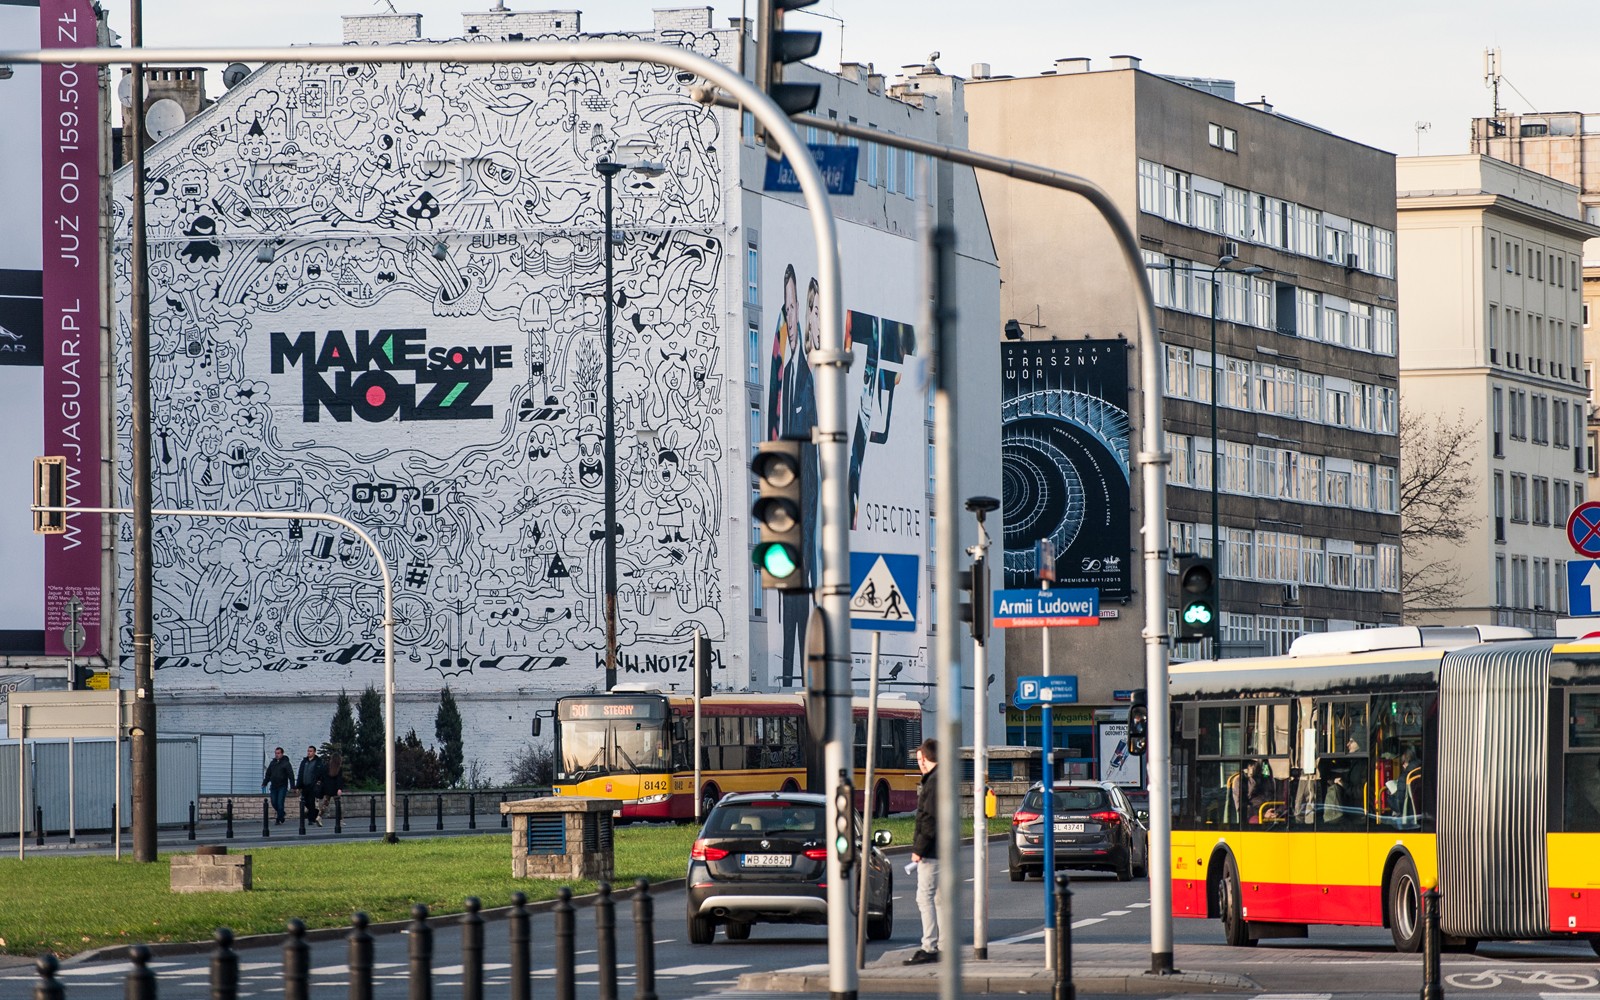 Ręcznie malowana reklama Make Some Noizz na ul. Polnej w Warszawie przy metro Politechnika | Make some Noizz | Portfolio